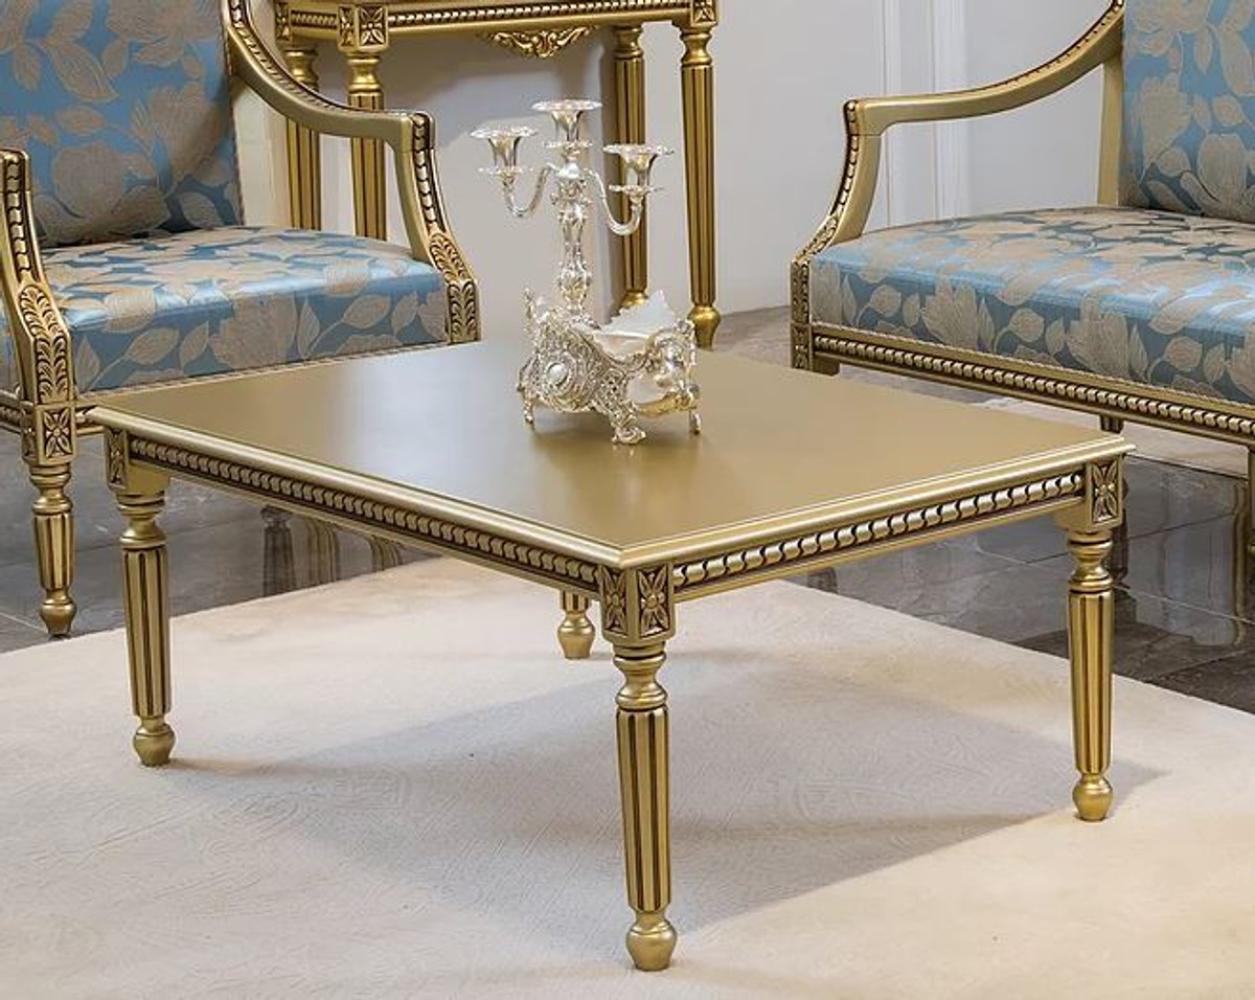 Casa Padrino Luxus Barock Couchtisch Gold 110 x 70 x H. 46 cm - Eleganter Massivholz Wohnzimmertisch im Barockstil - Barock Wohnzimmer Möbel Bild 1